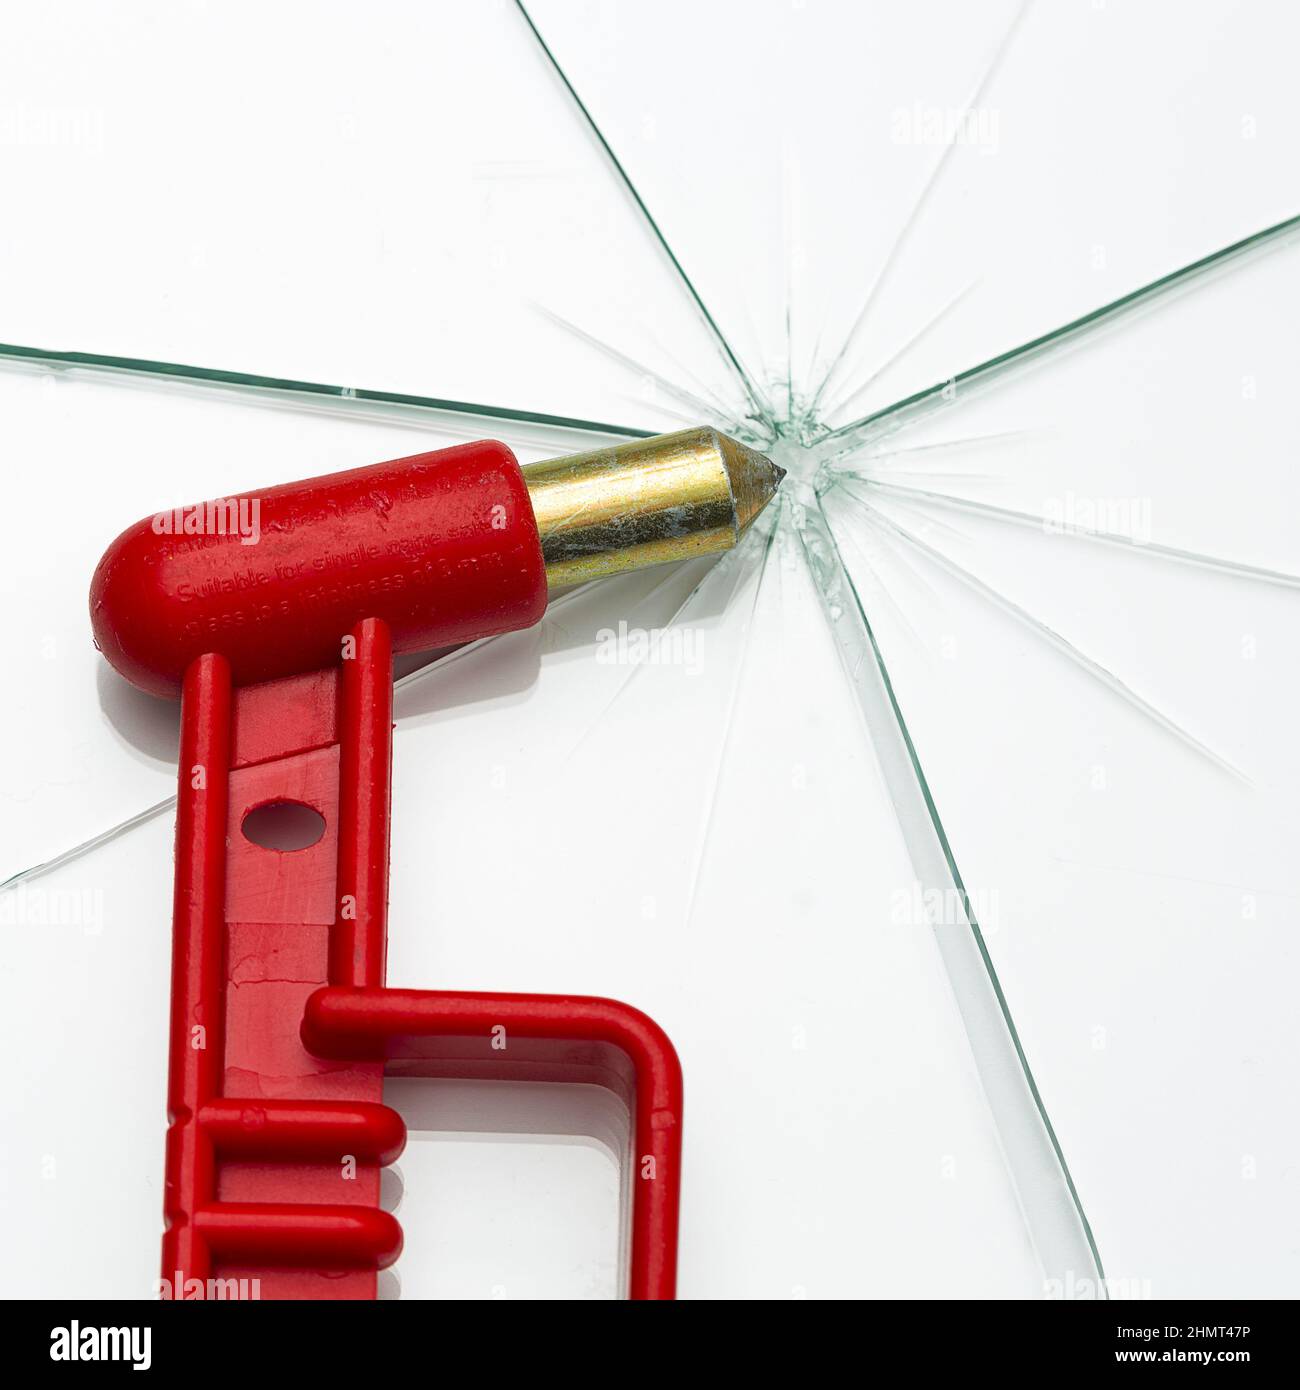 Roter Nothammer mit gebrochenem Glasscheiben-Rettungshammer auf weißem  Hintergrund Stockfotografie - Alamy